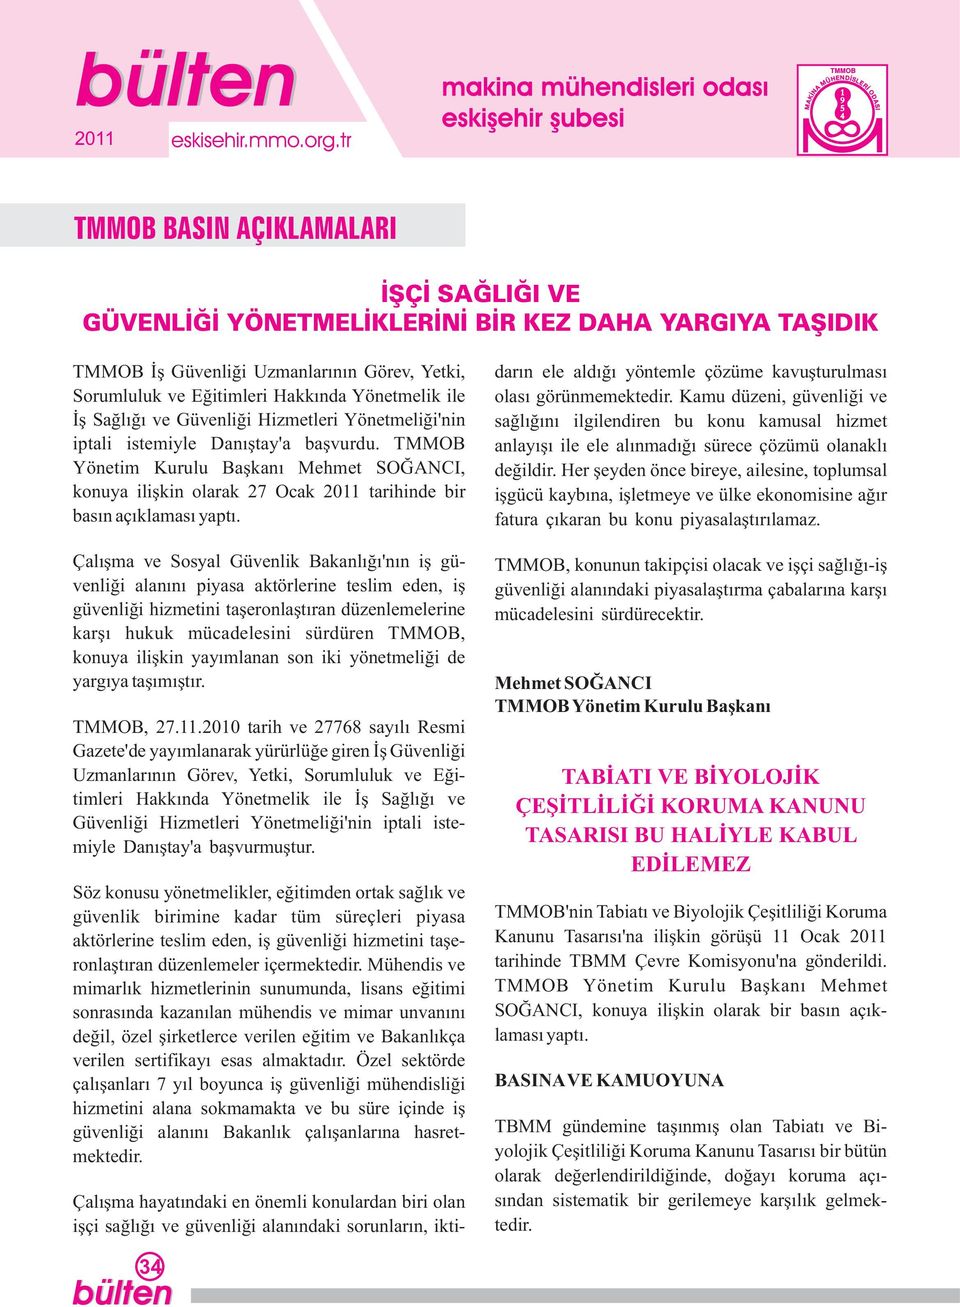 TMMOB Yönetim Kurulu Başkanı Mehmet SOĞANCI, konuya ilişkin olarak 27 Ocak 211 tarihinde bir basın açıklaması yaptı.